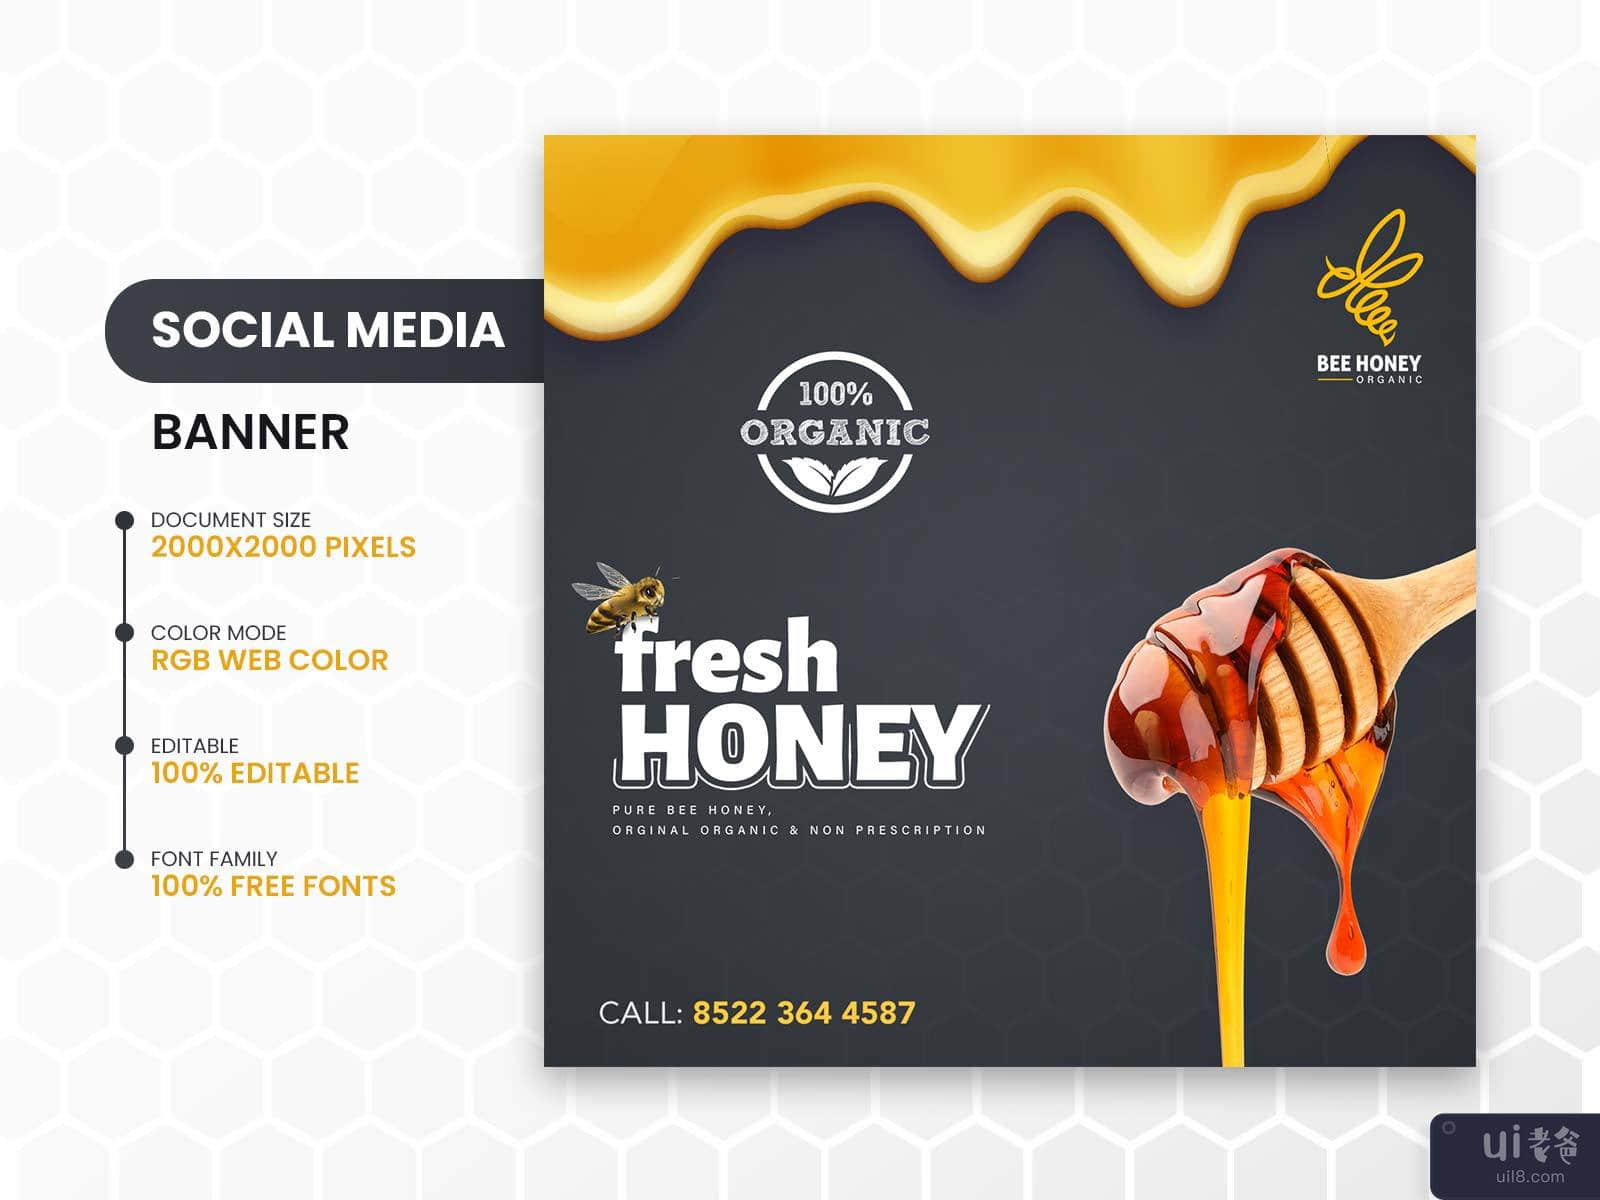 蜜蜂蜂蜜有机品牌宣传 ✨(Bee Honey🍯 Organic Branding Shot✨)插图6